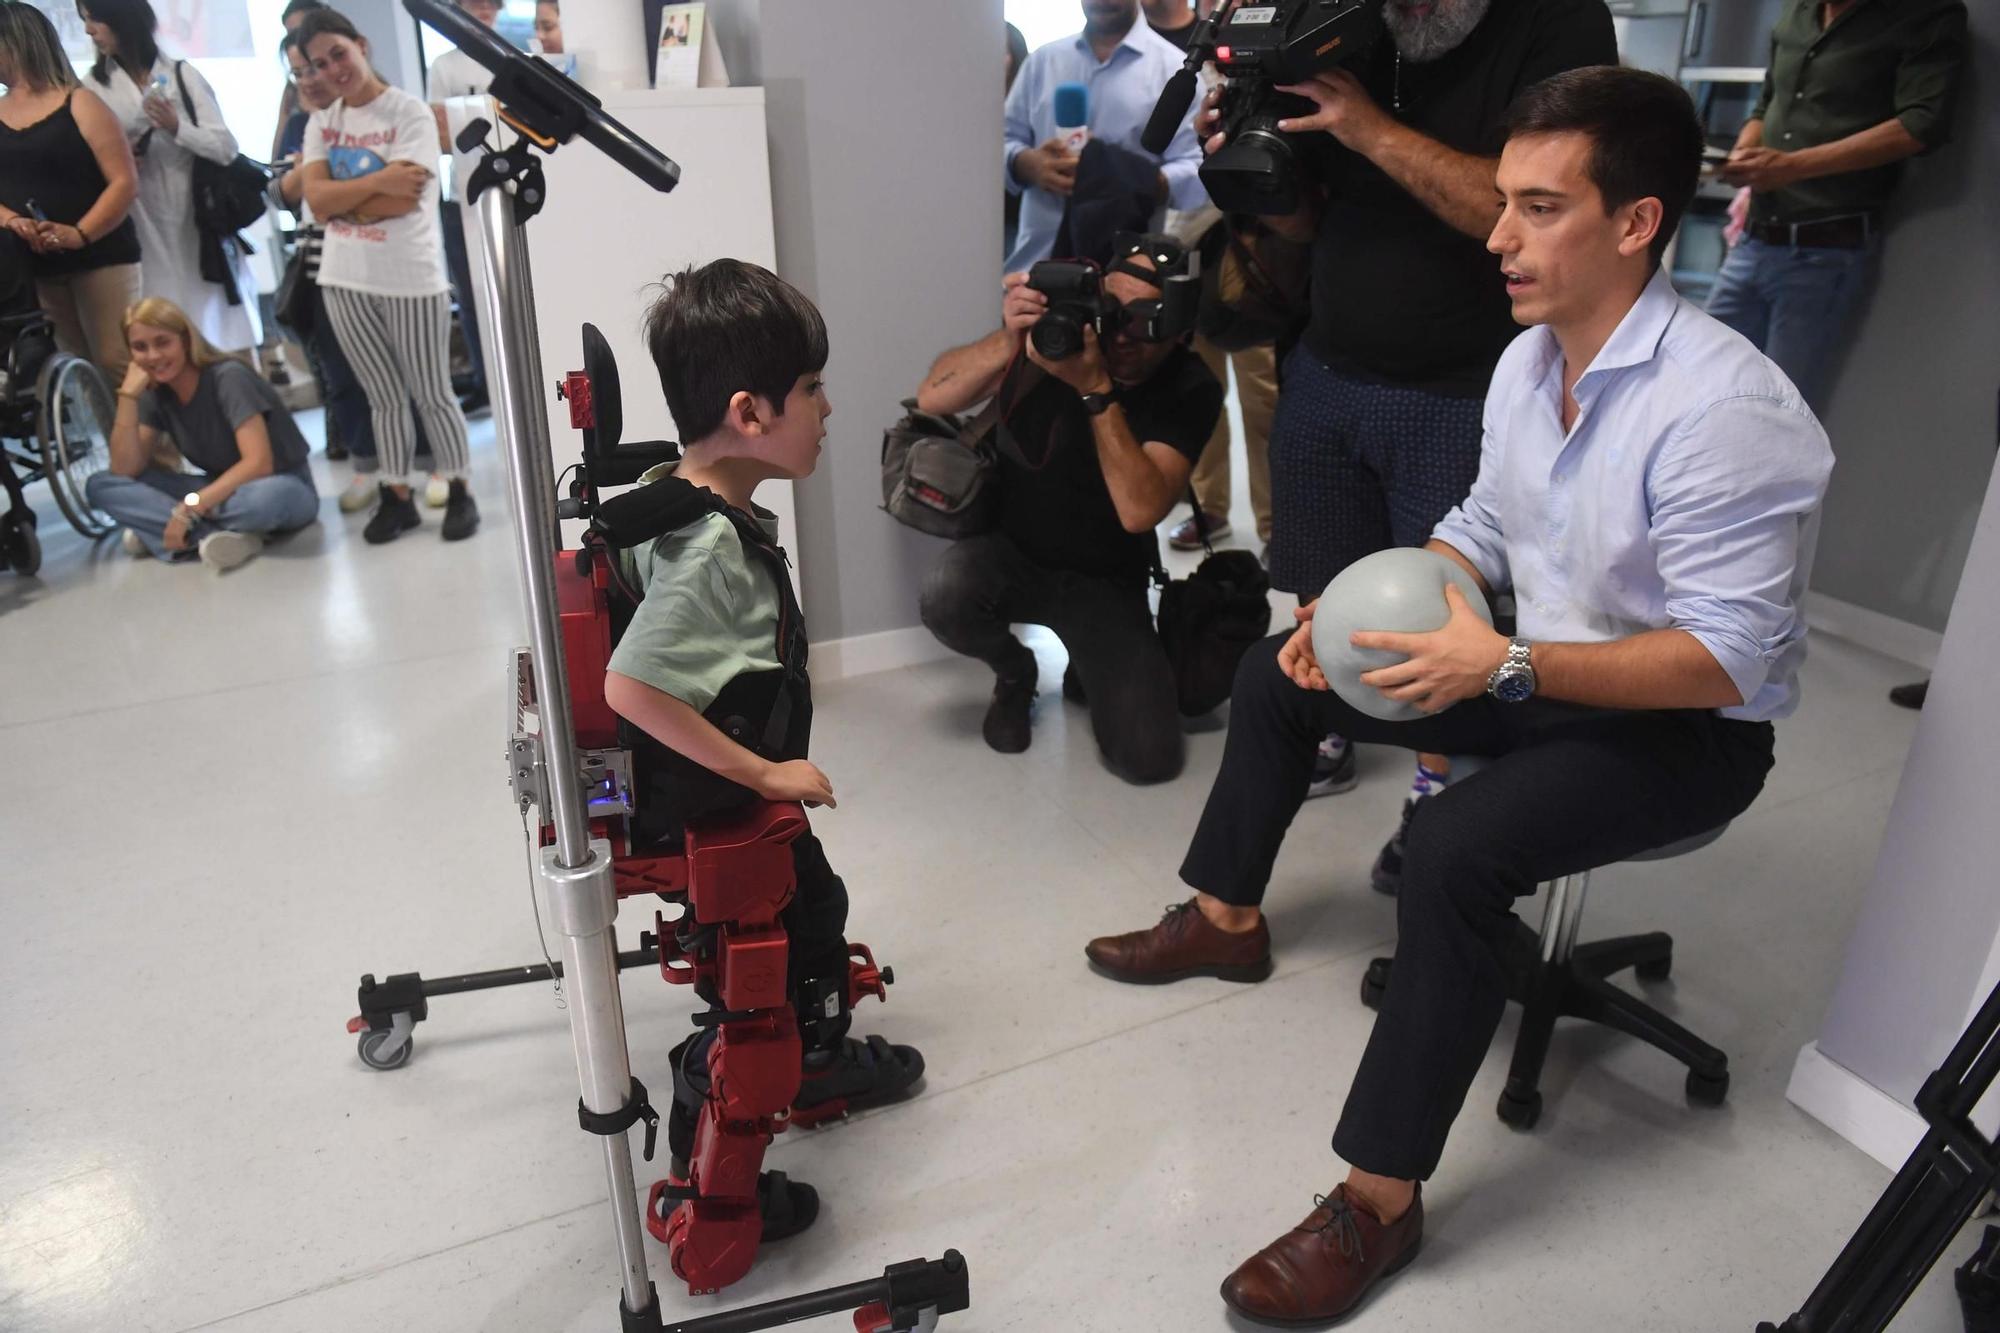 Darío y Tiago prueban en A Coruña el primer exoesqueleto para niños